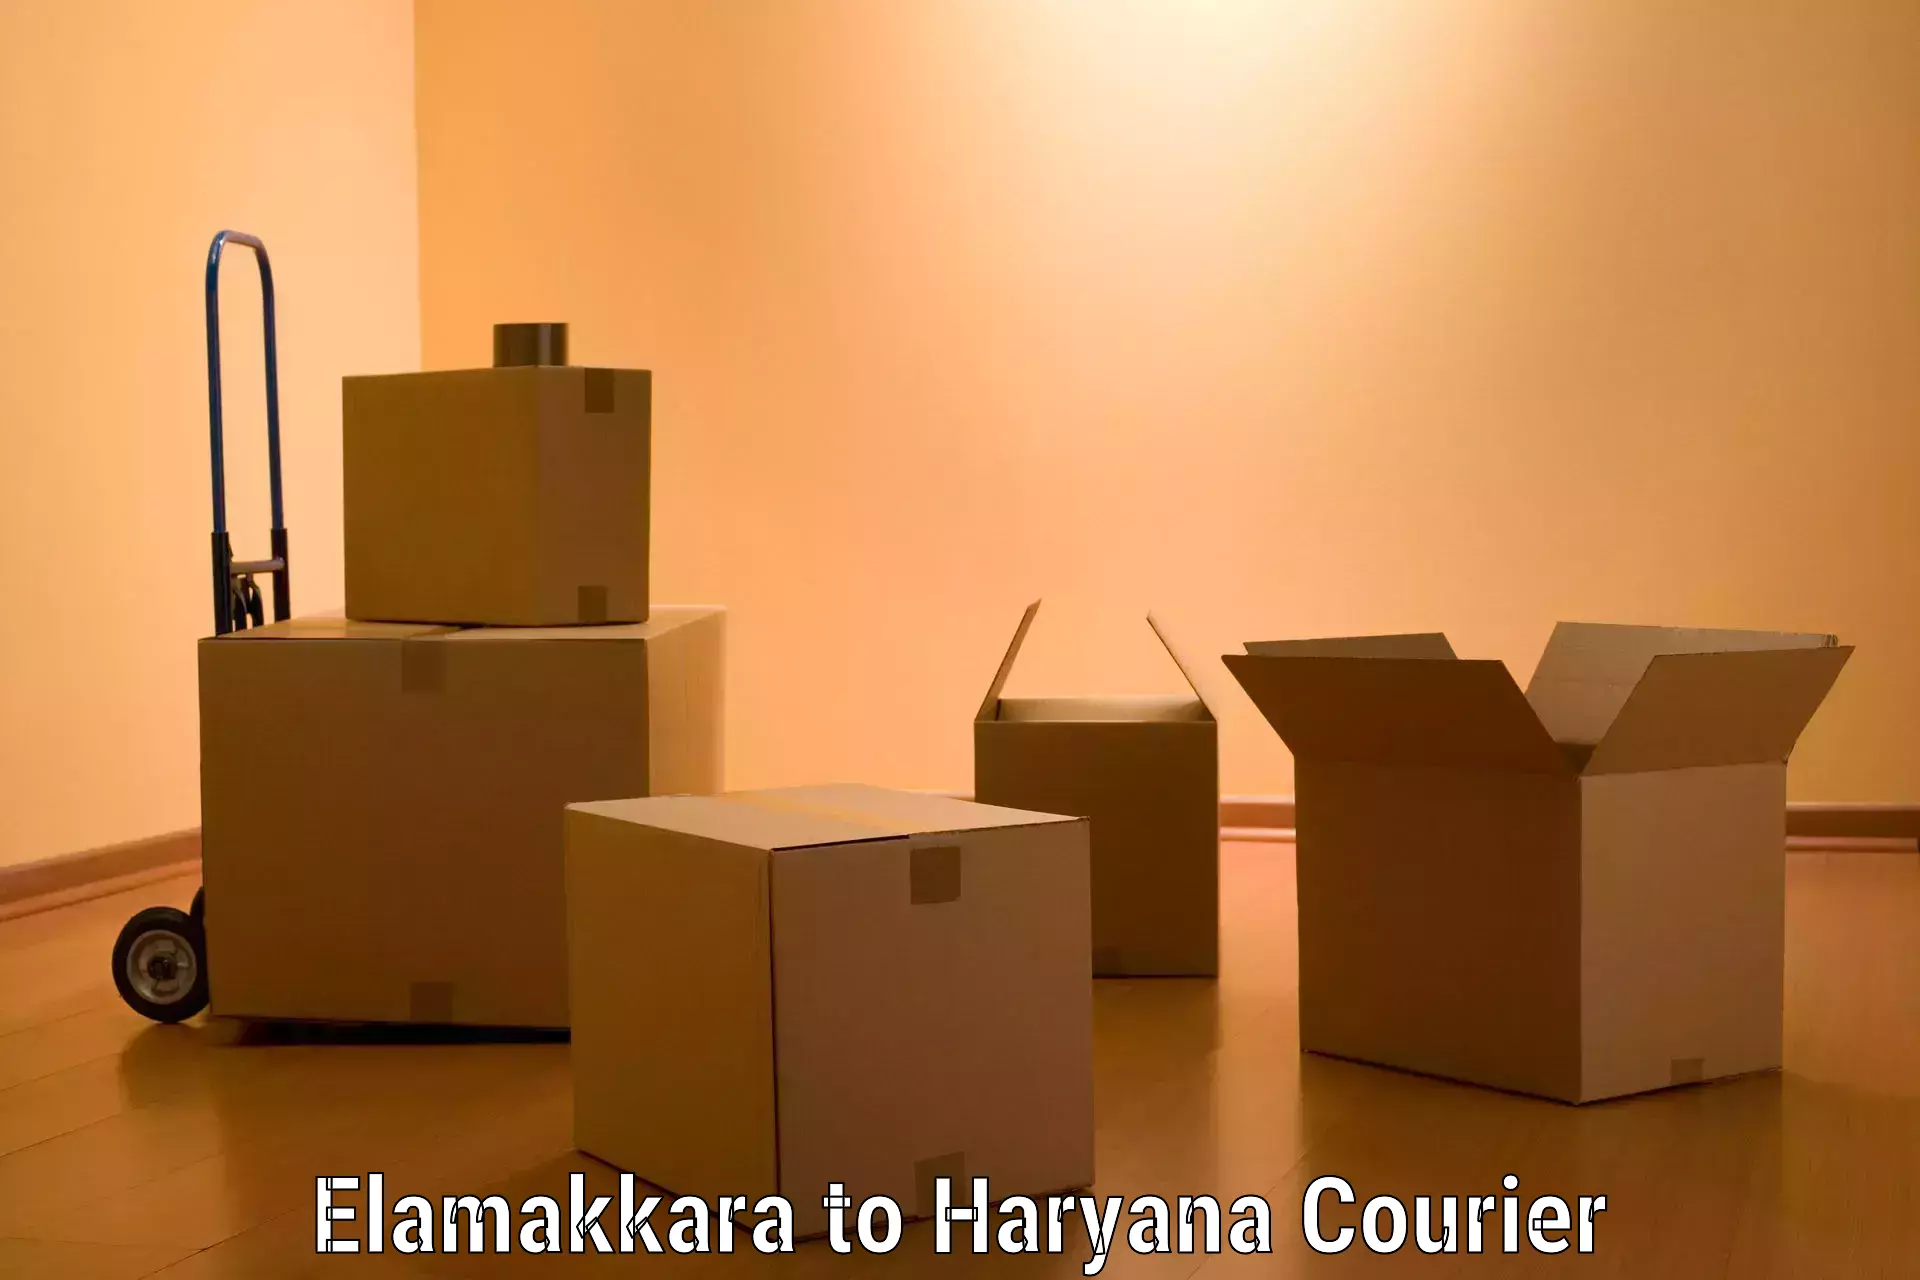 Professional furniture shifting in Elamakkara to Chaudhary Charan Singh Haryana Agricultural University Hisar